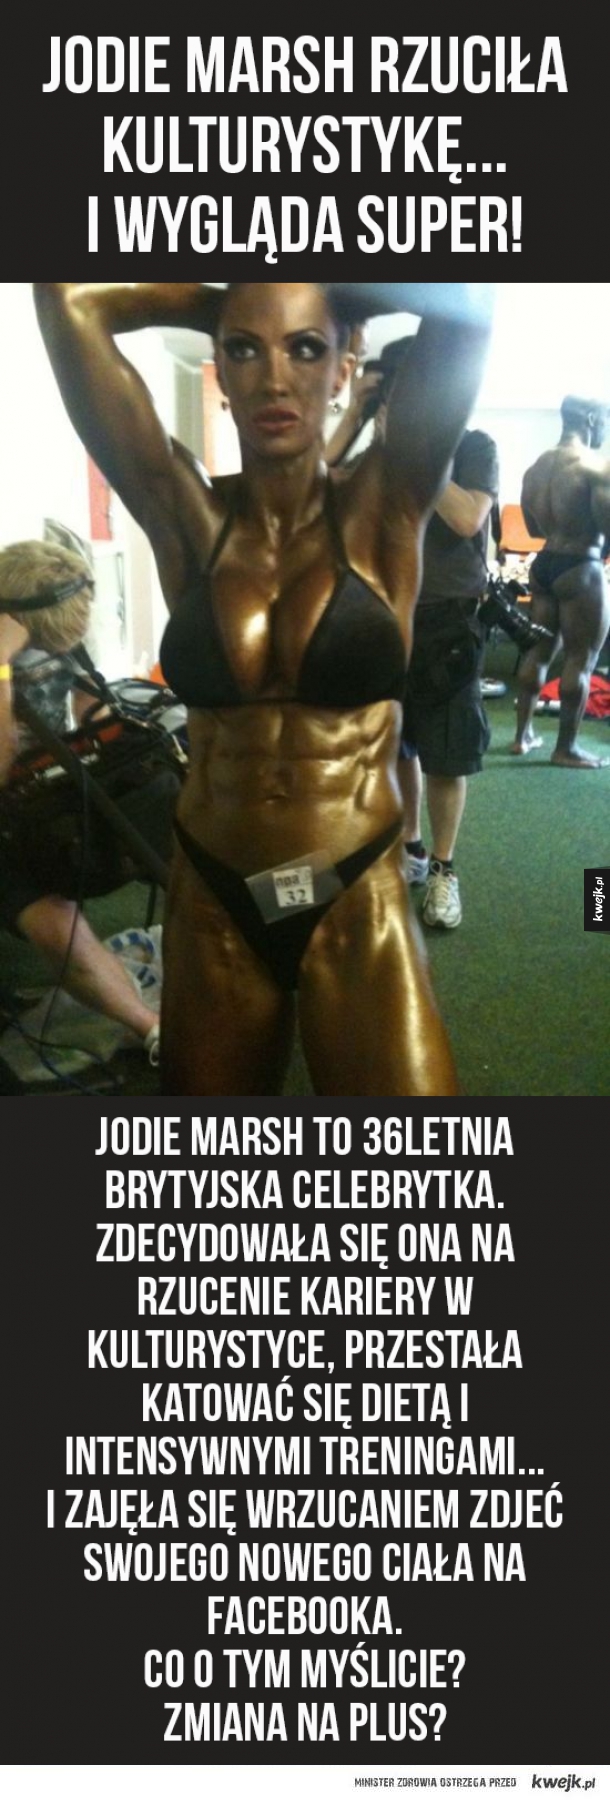 Transformacja Jodie Marsh! Co myślicie?